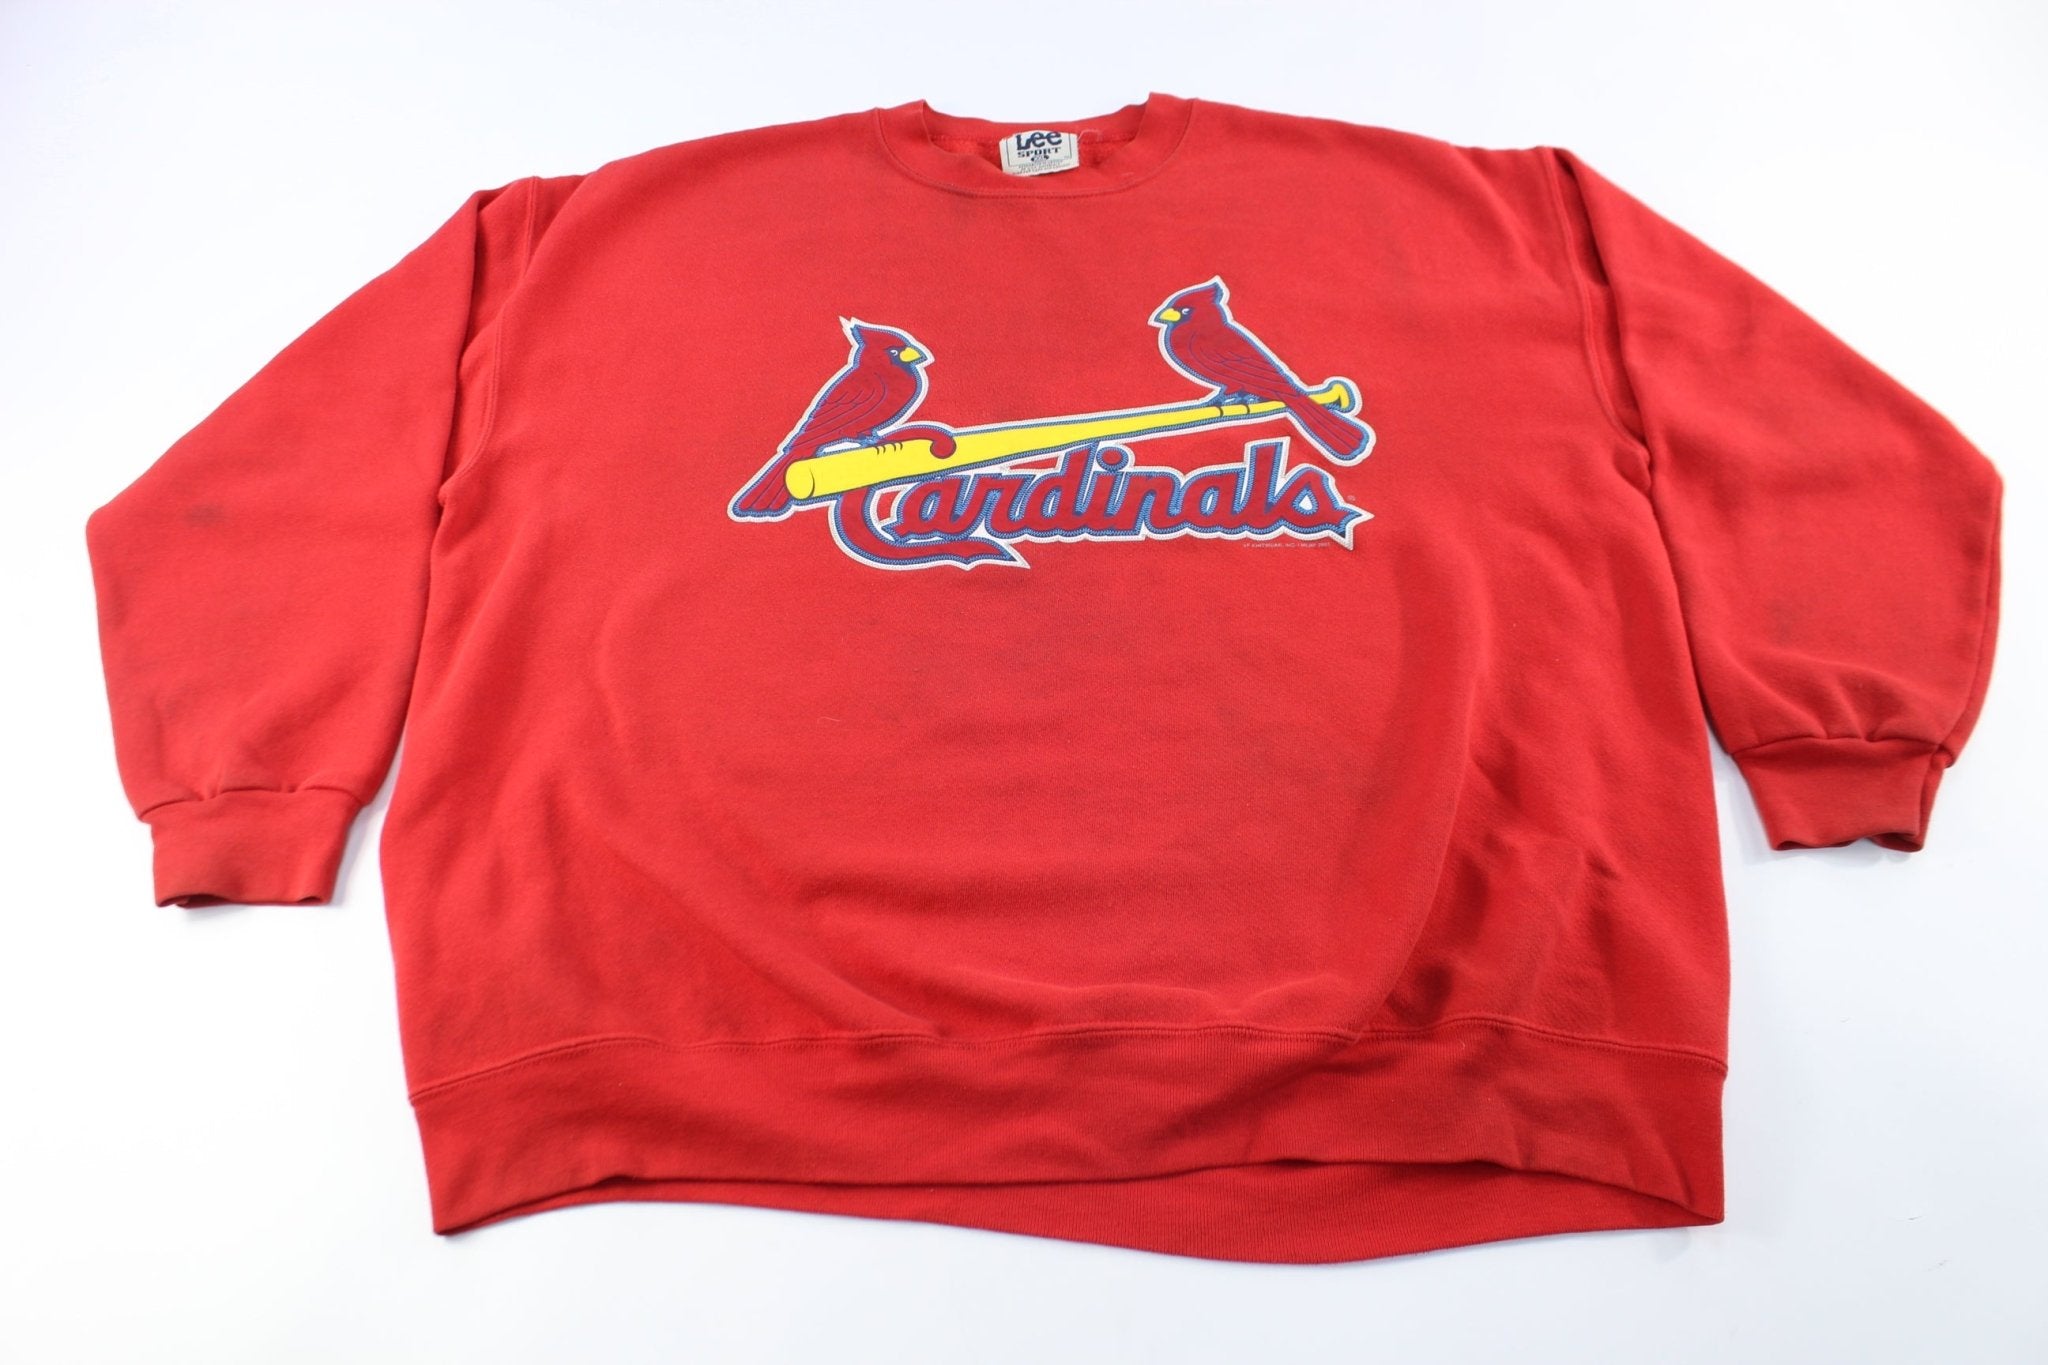 2001 St. Louis Cardinals Sweatshirt - ThriftedThreads.com